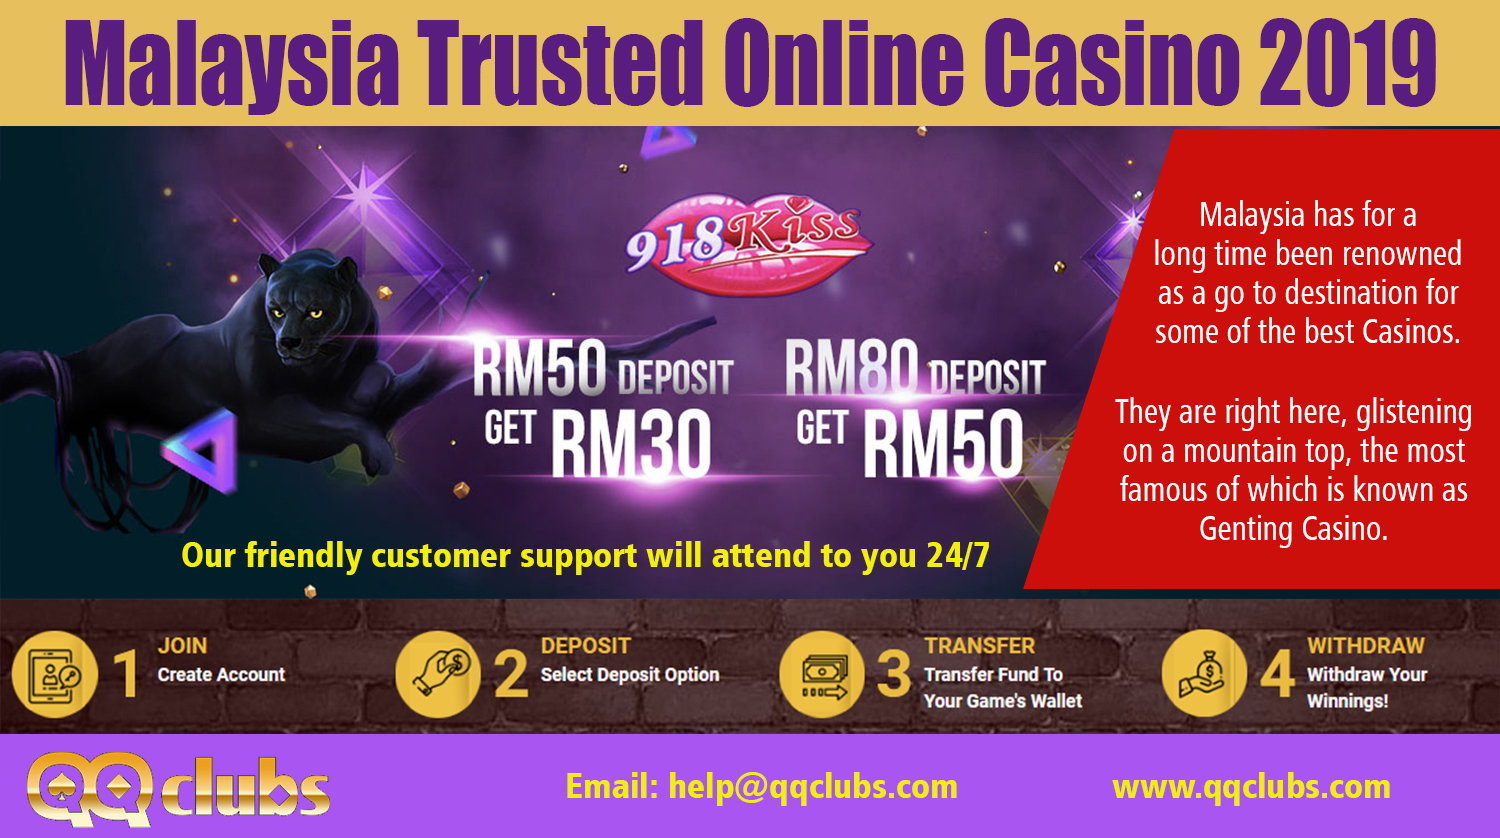 Online casino malaysia free credit 2019 ipb ставки на спорт мостбет